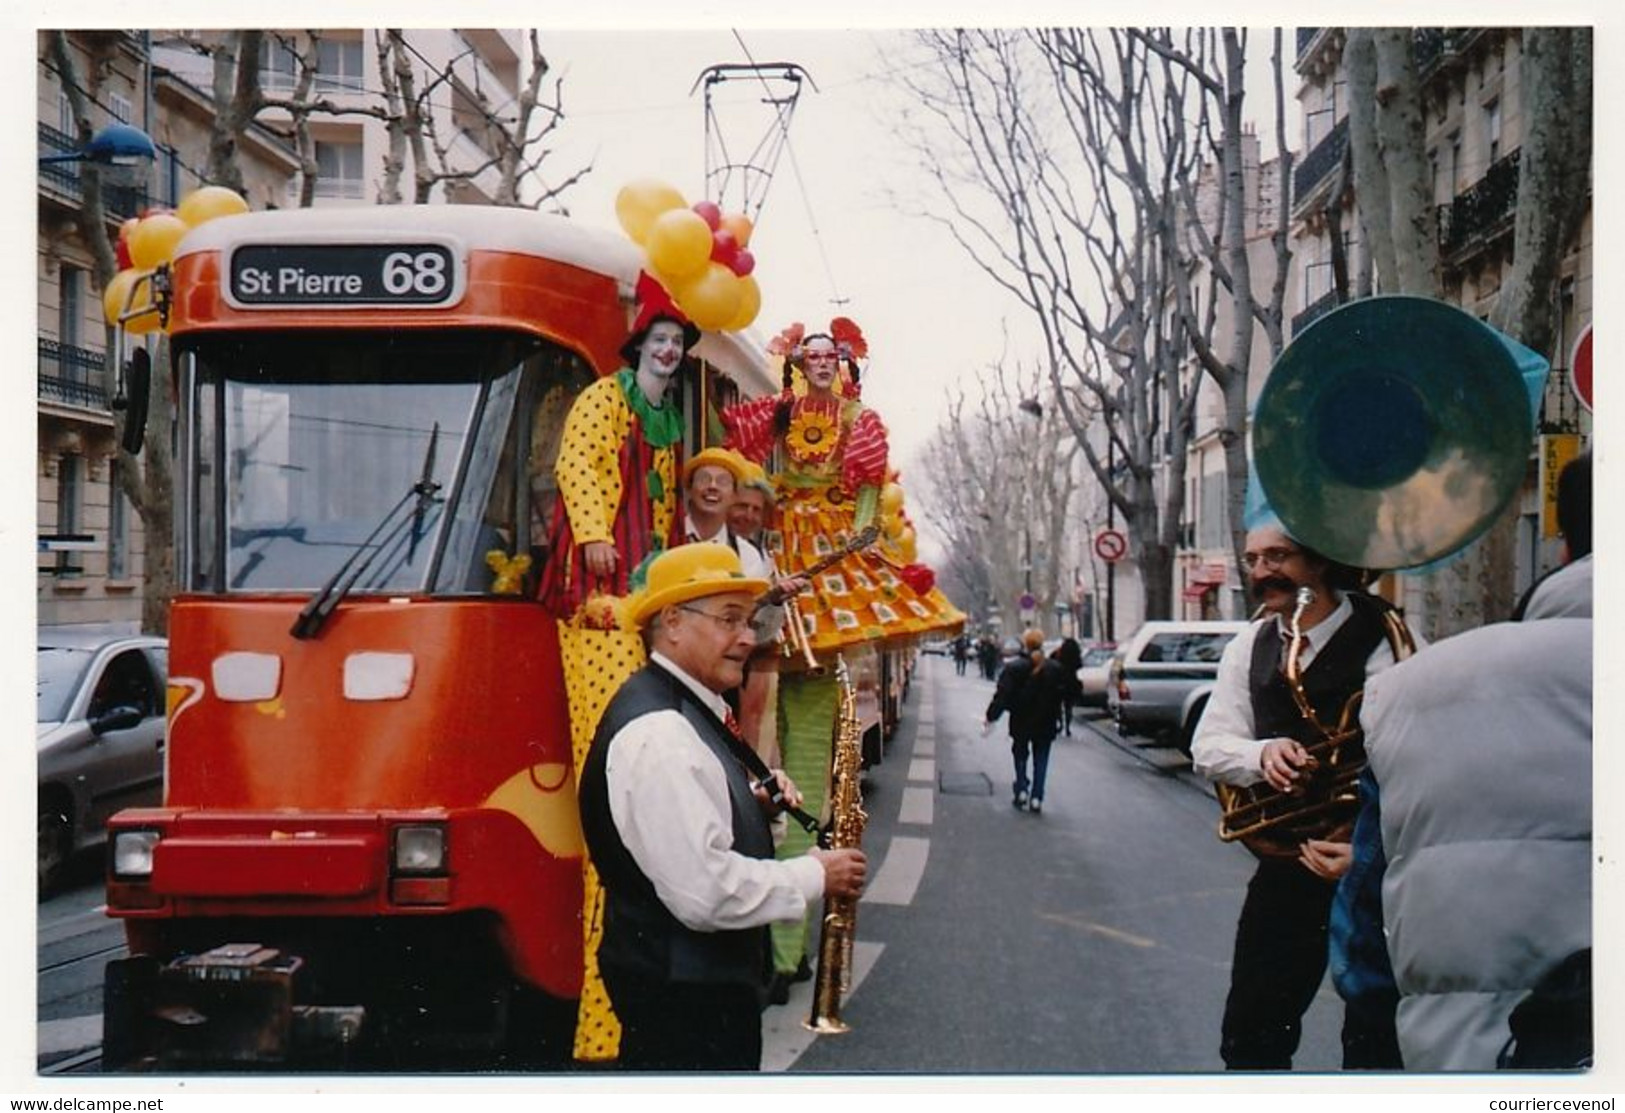 CPM - MARSEILLE (B Du R) - Tramway De Marseille (68) - Adieu Aux PCC (Boulevard Chave) - Cinq Avenues, Chave, Blancarde, Chutes Lavies